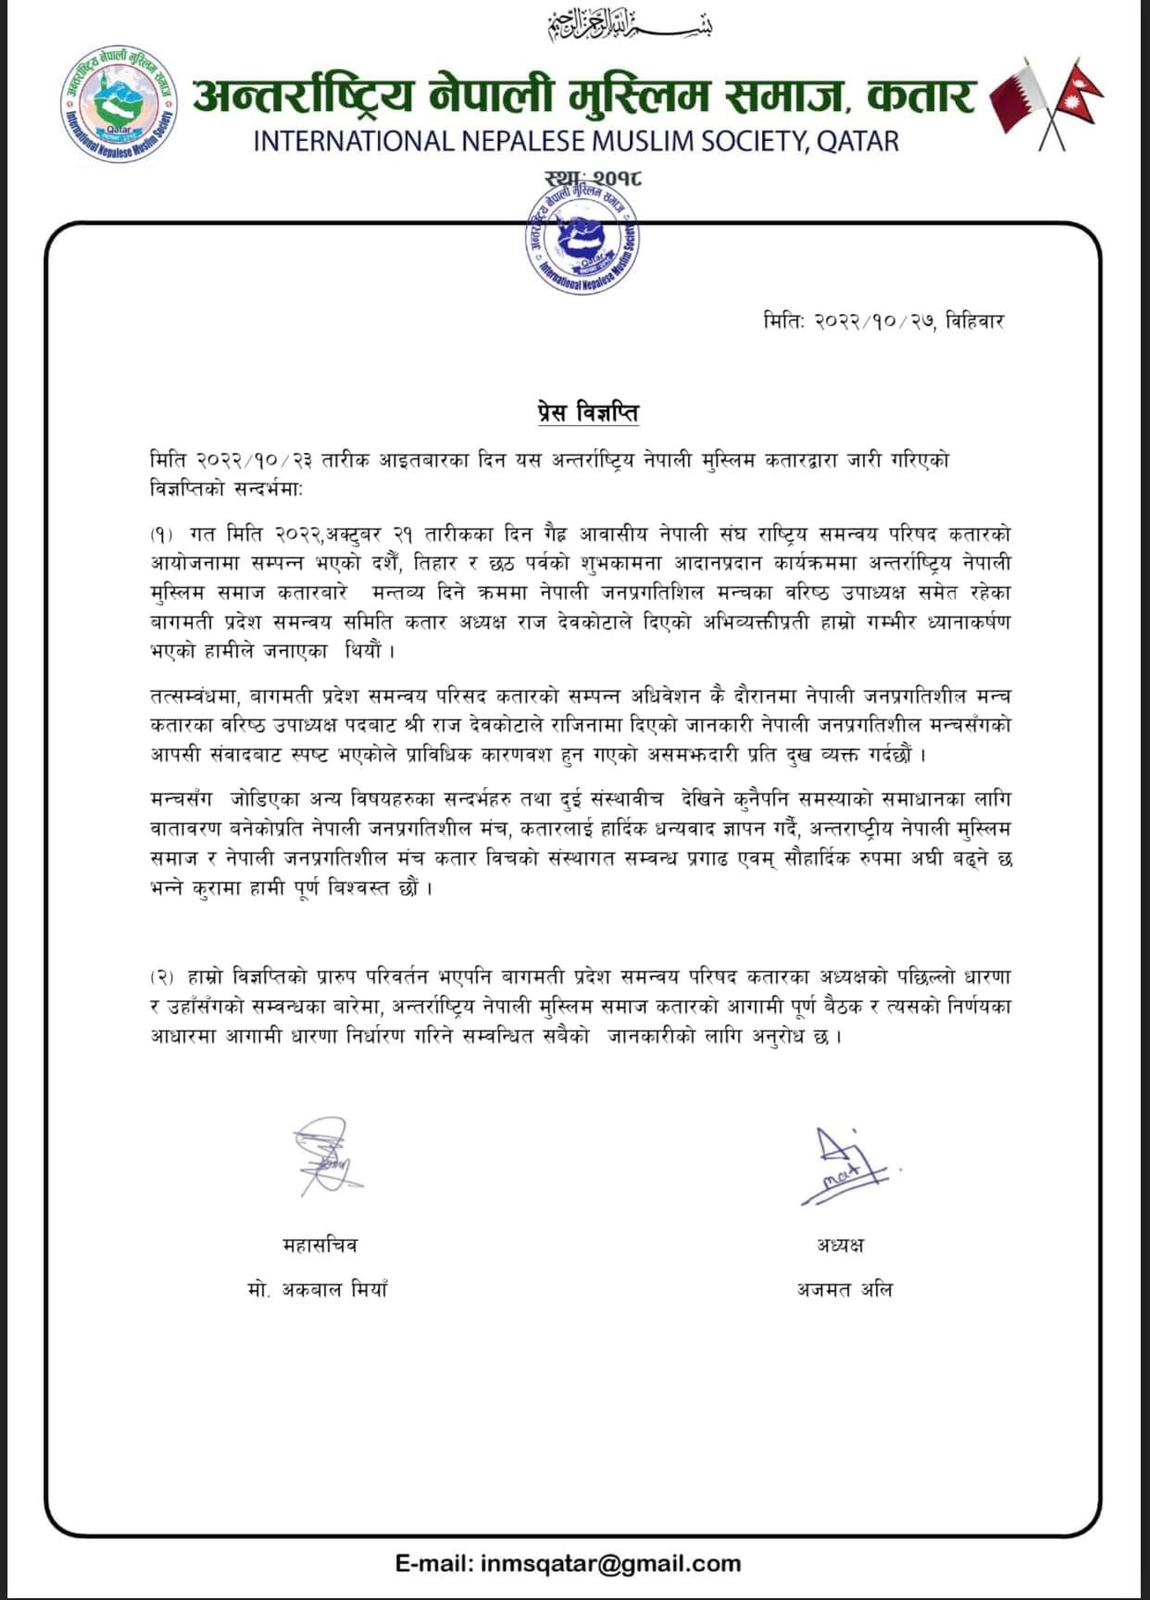 अन्तर्राष्ट्रिय नेपाली मुस्लिम समाज कतारद्वारा २०२२/१०/२३ का दिन जारि गरिएको विज्ञप्तिमा नेपाली जनप्रगतिशिल मंच कतार लाई जोडिनु त्रुटीपूर्ण रहेको स्वीकार